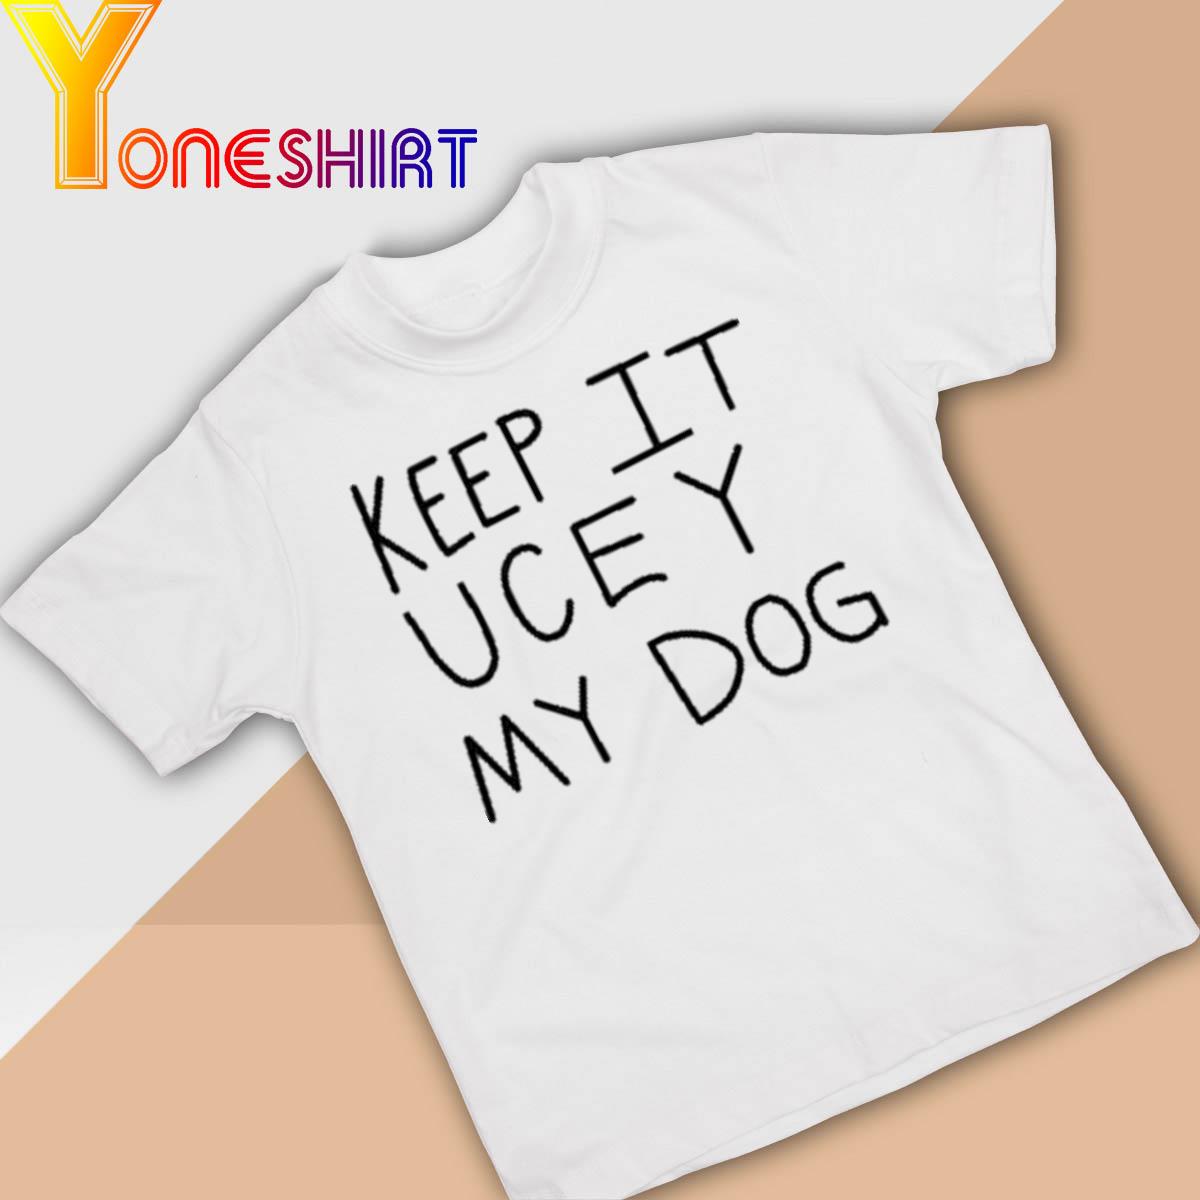 Keep It Uce Y My Dog shirt